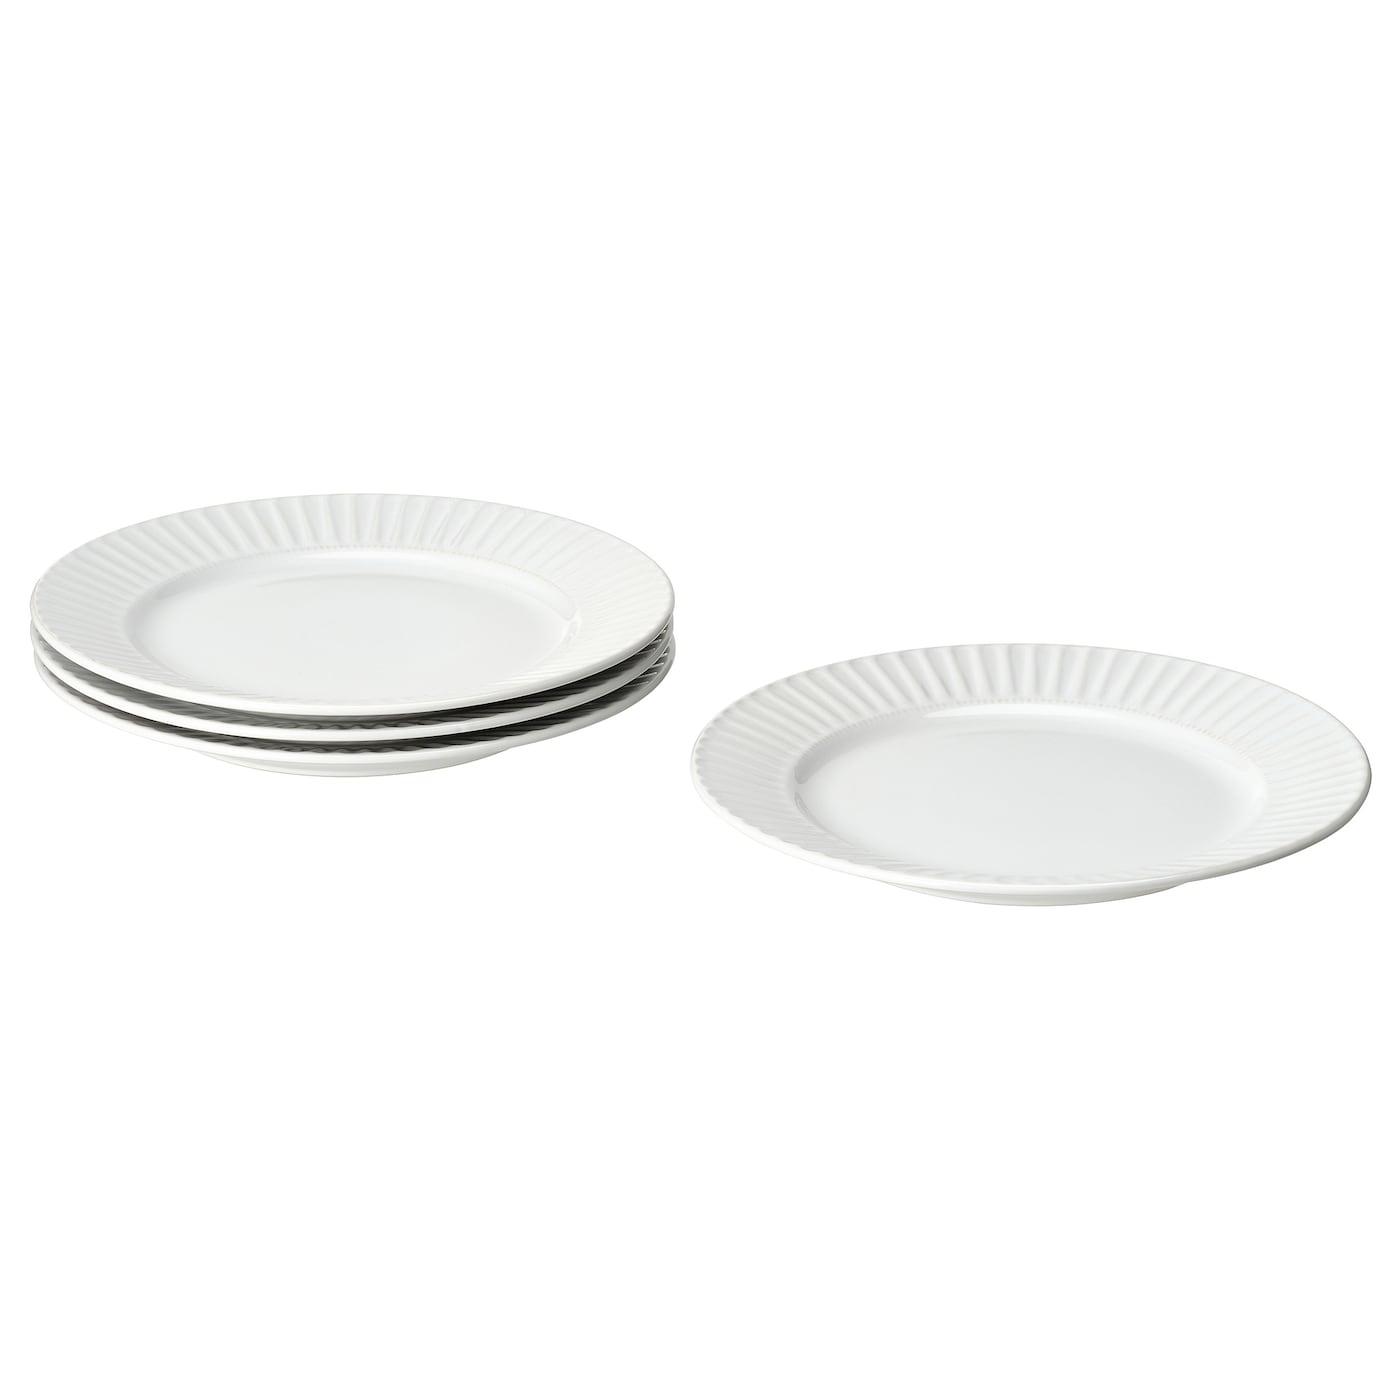 Набор тарелок, 4 шт. - IKEA STRIMMIG, 27 см, белый, СТРИММИГ ИКЕА